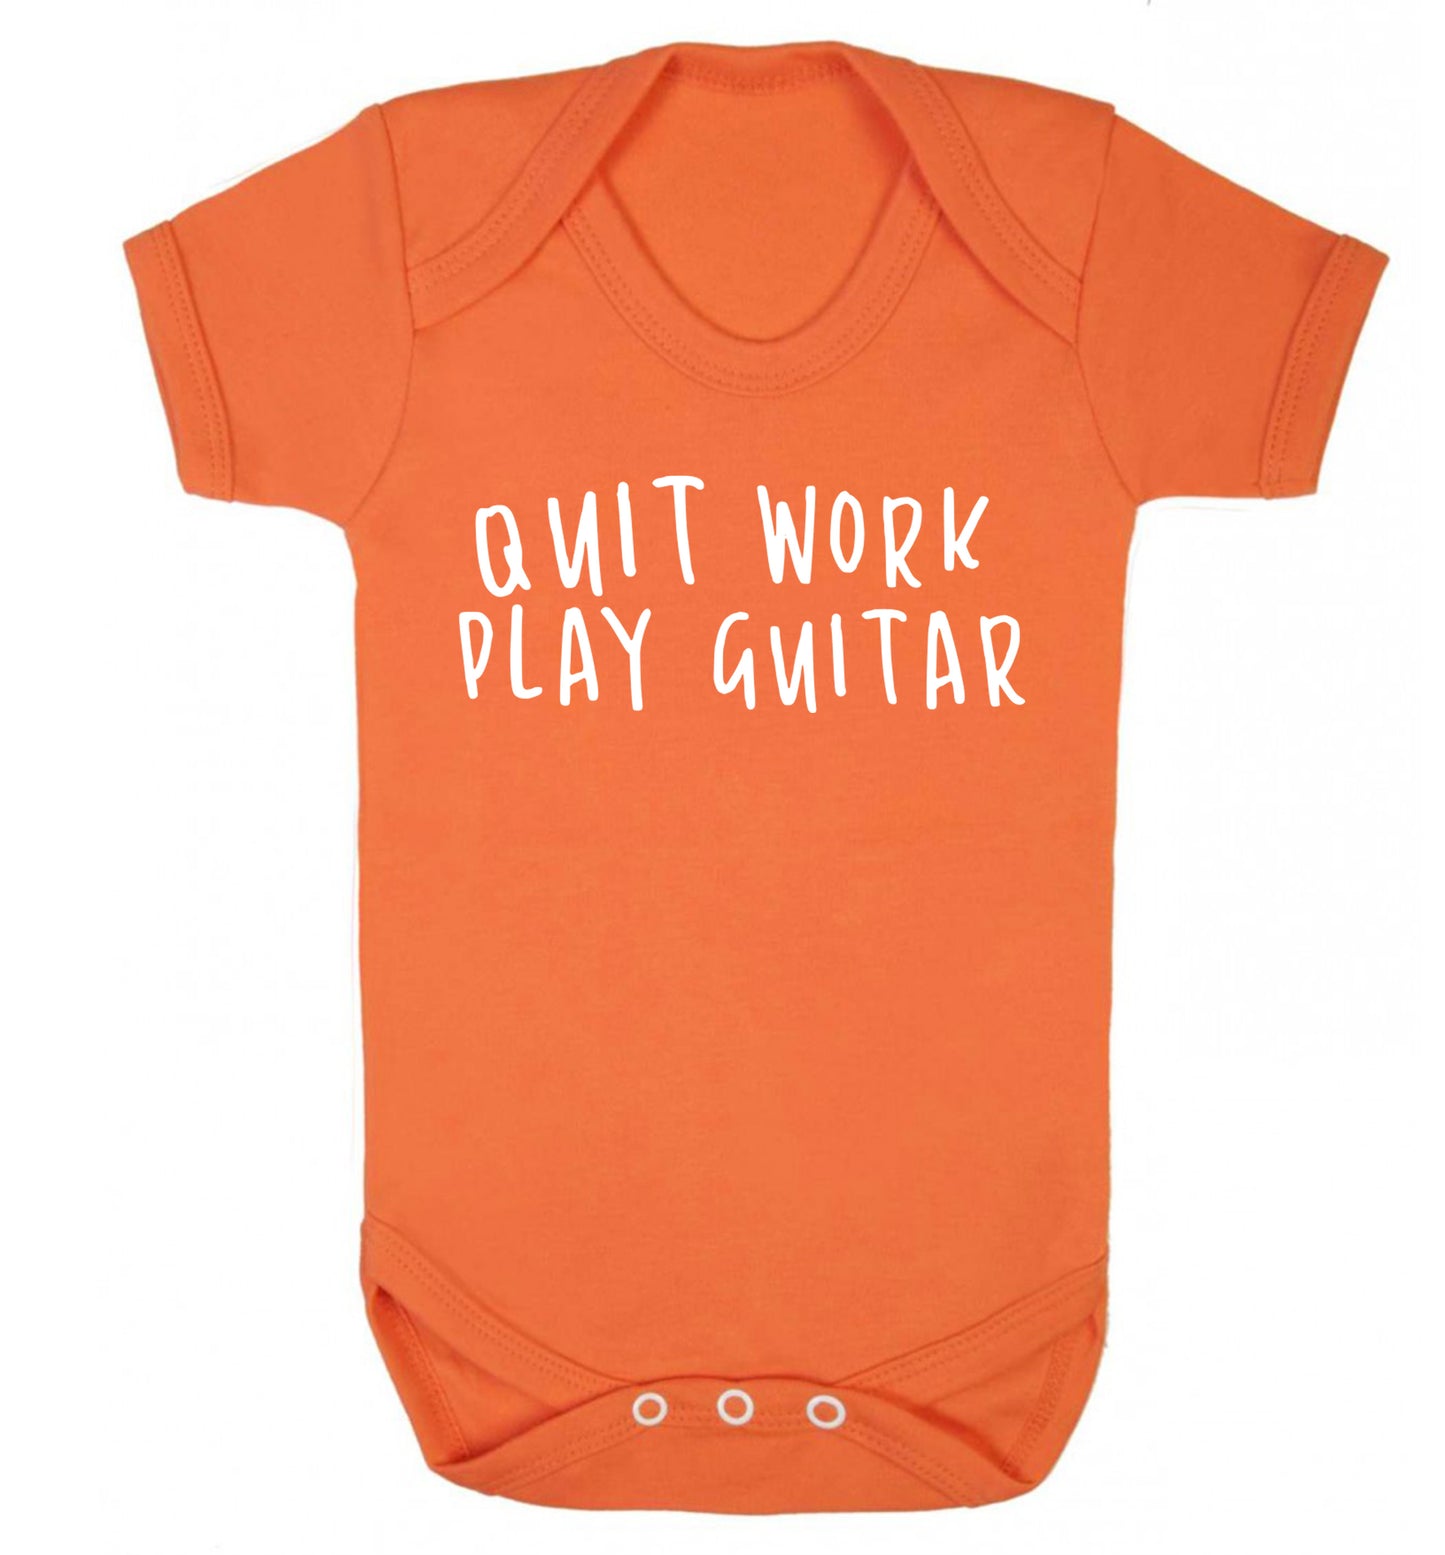 Quit work play guitar Baby Vest orange 18-24 months